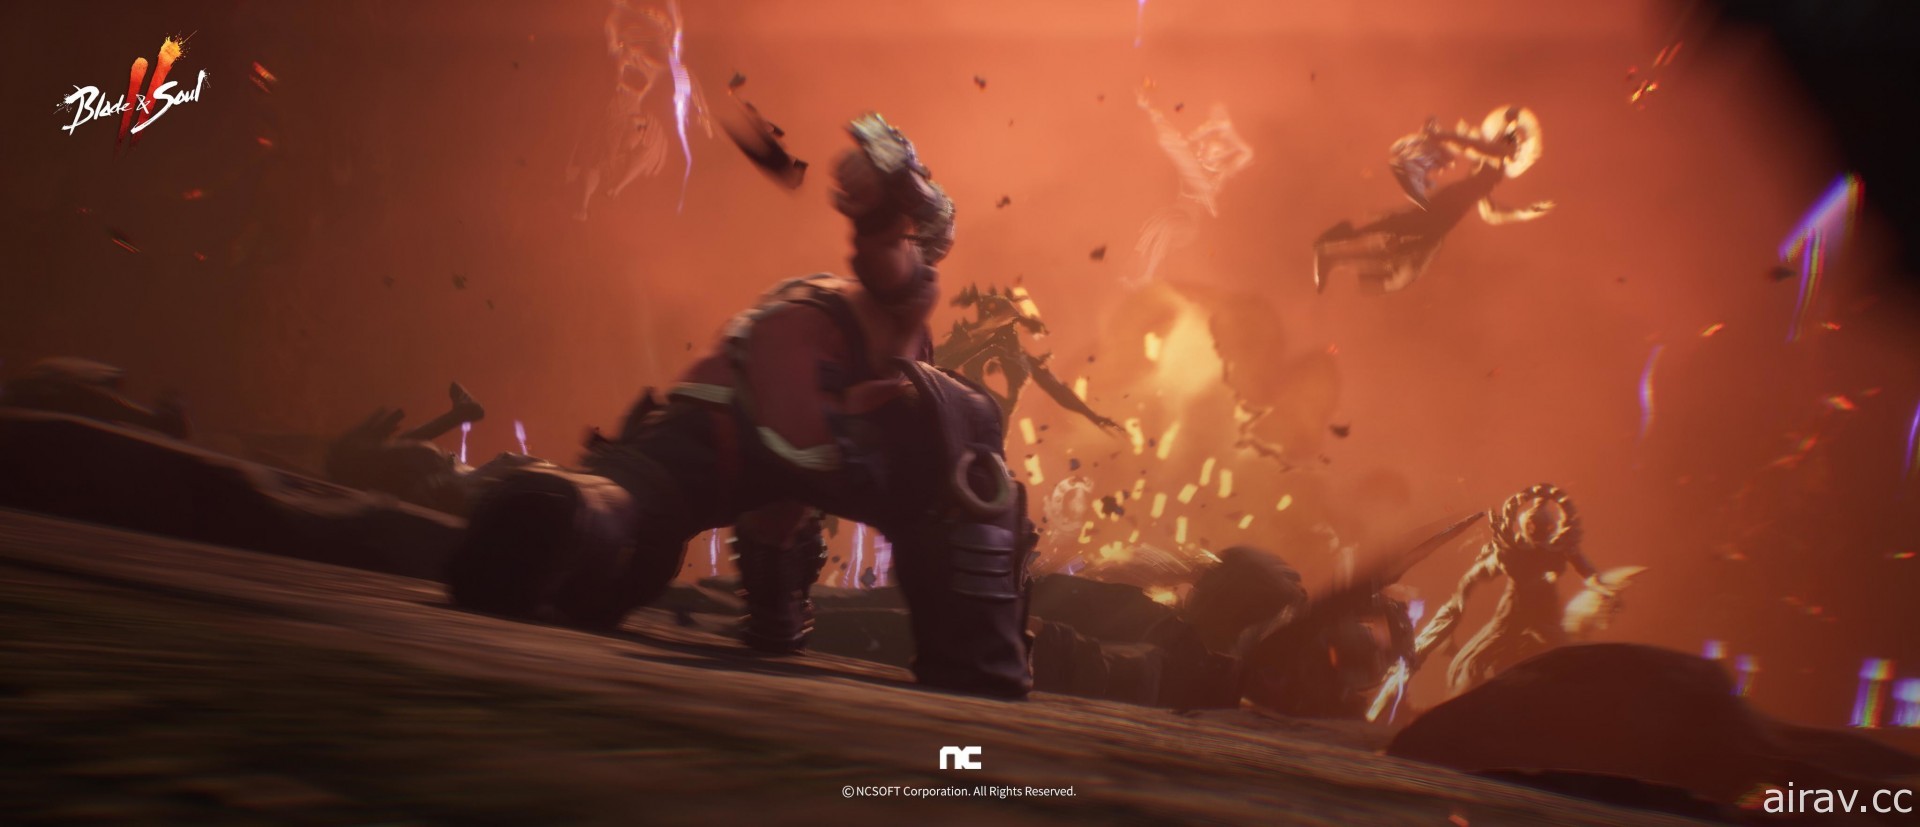 《劍靈 2》公開最新宣傳影片 揭露劍、斧、拳甲等戰鬥畫面及新職業